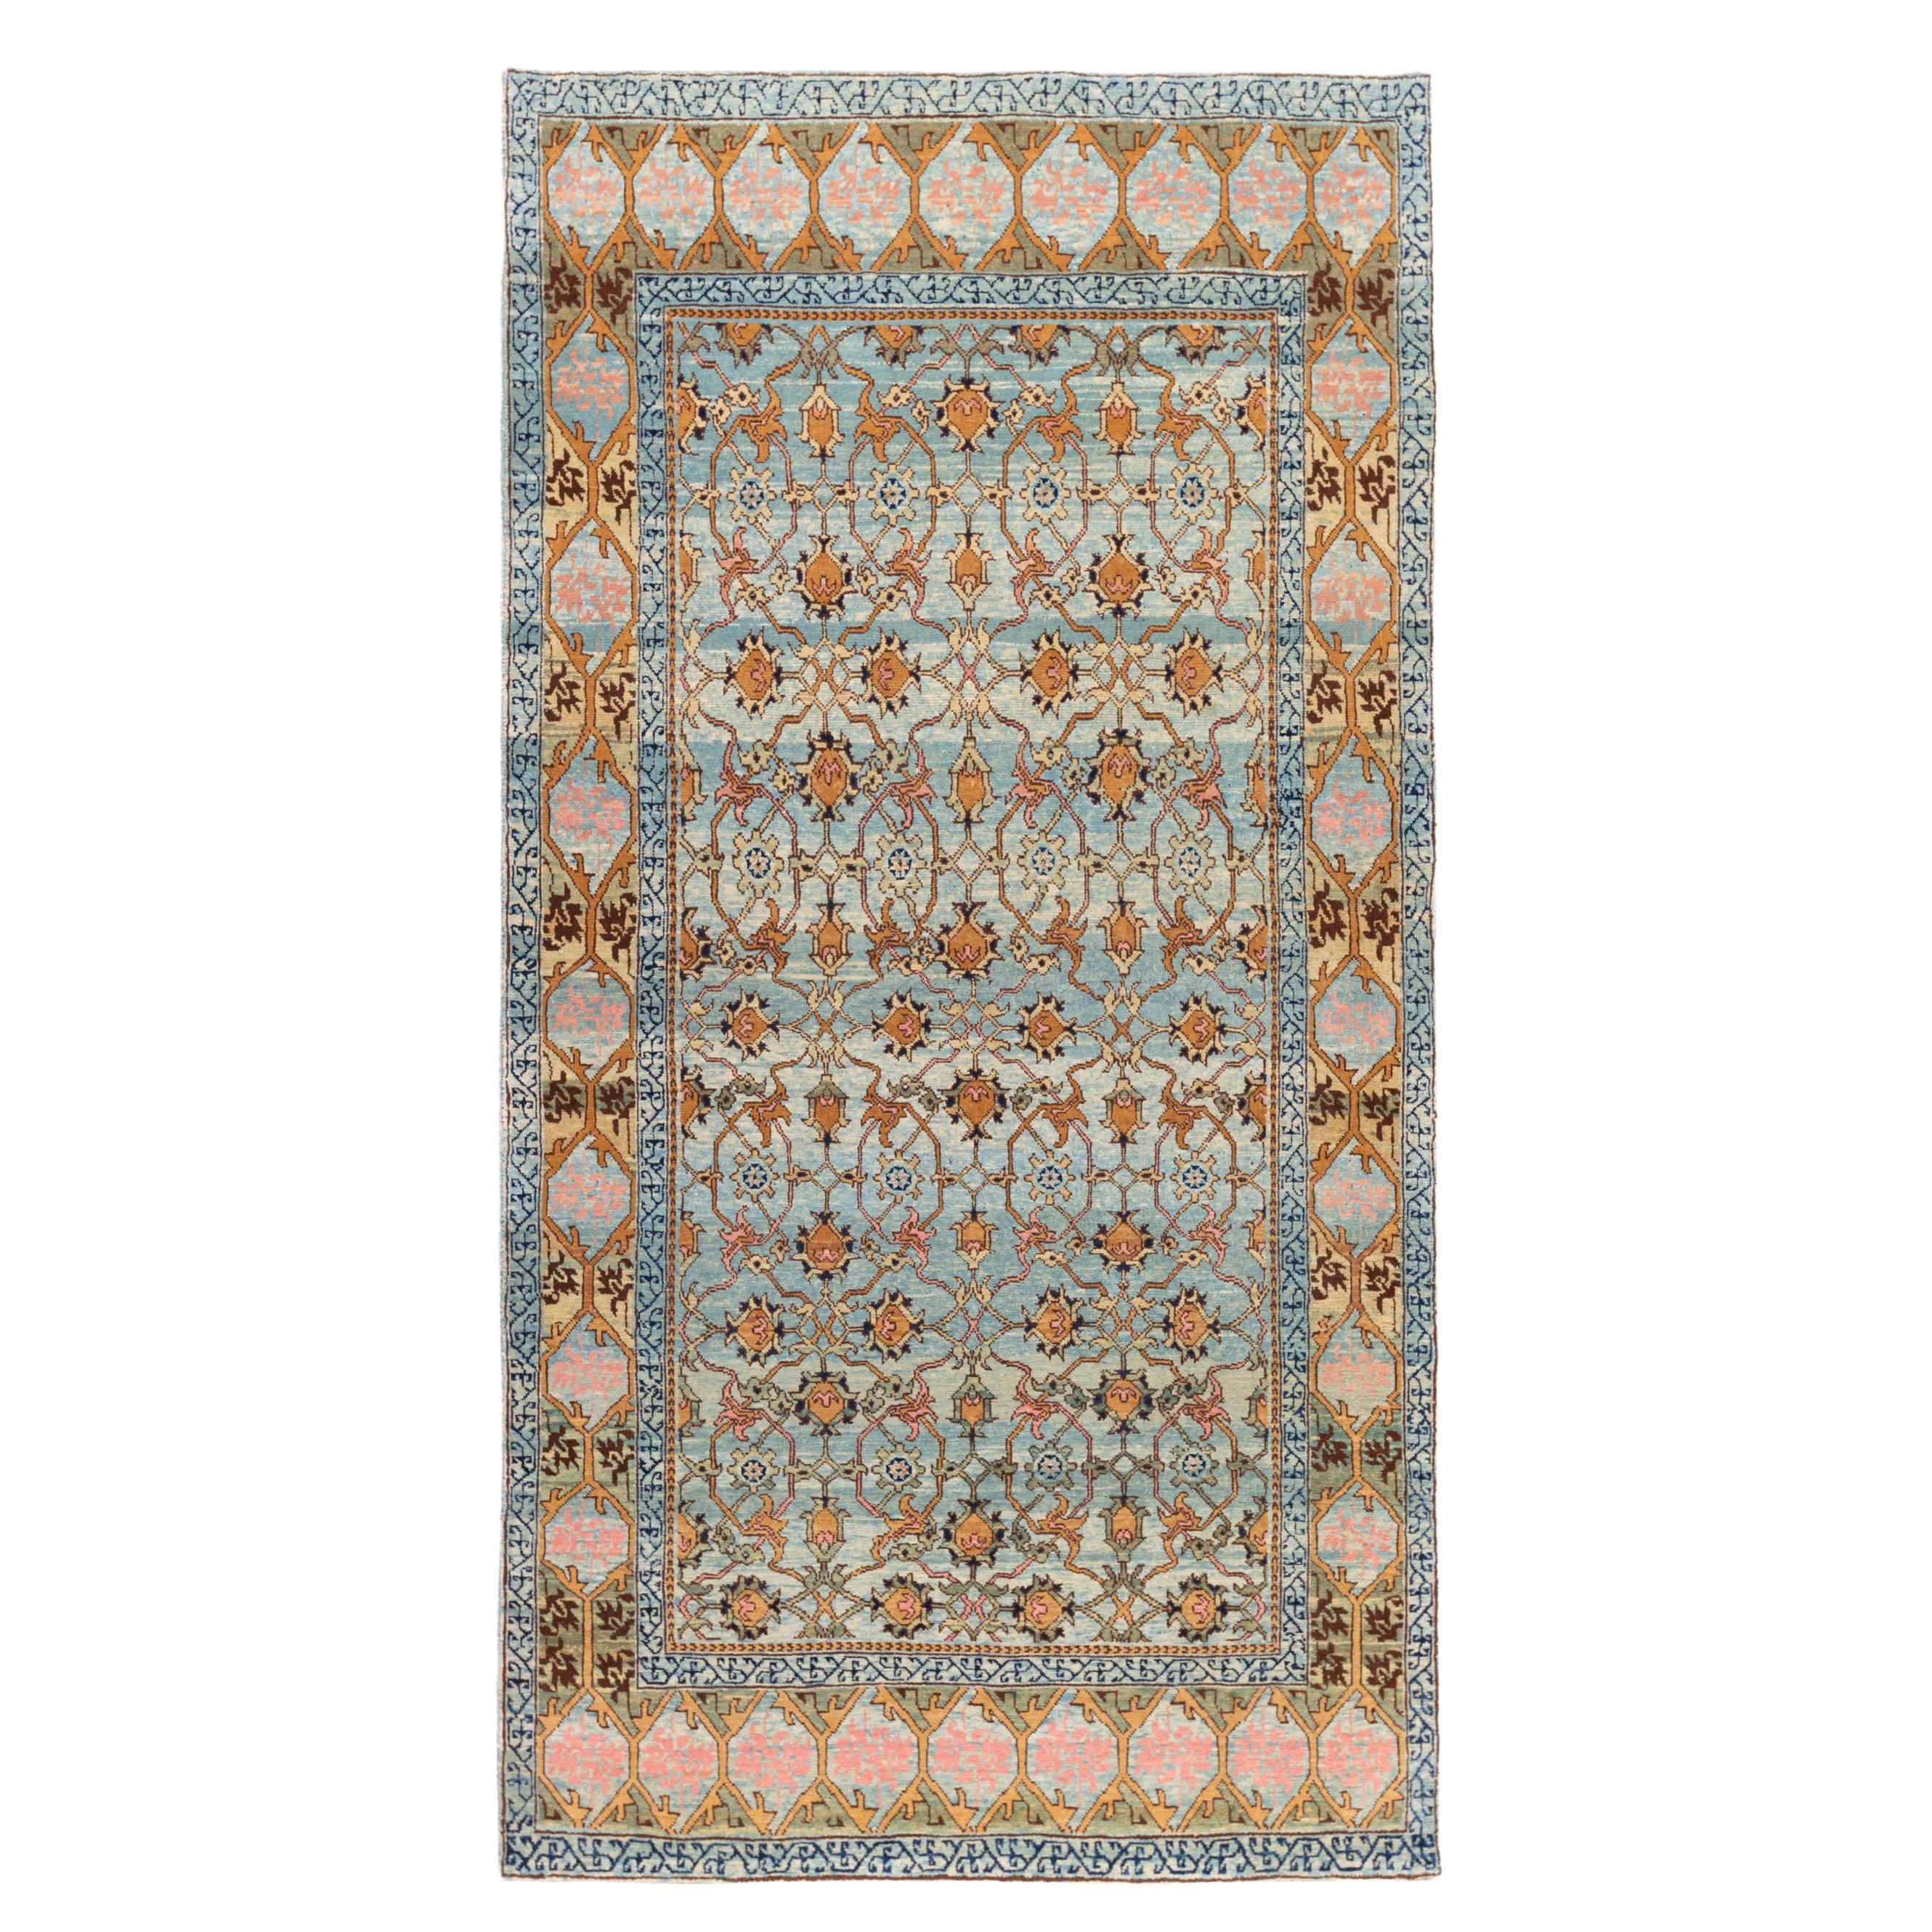 Ararat-Teppich Mamluk mit Gitterdesign, antiker Revival-Teppich, natürlich gefärbt